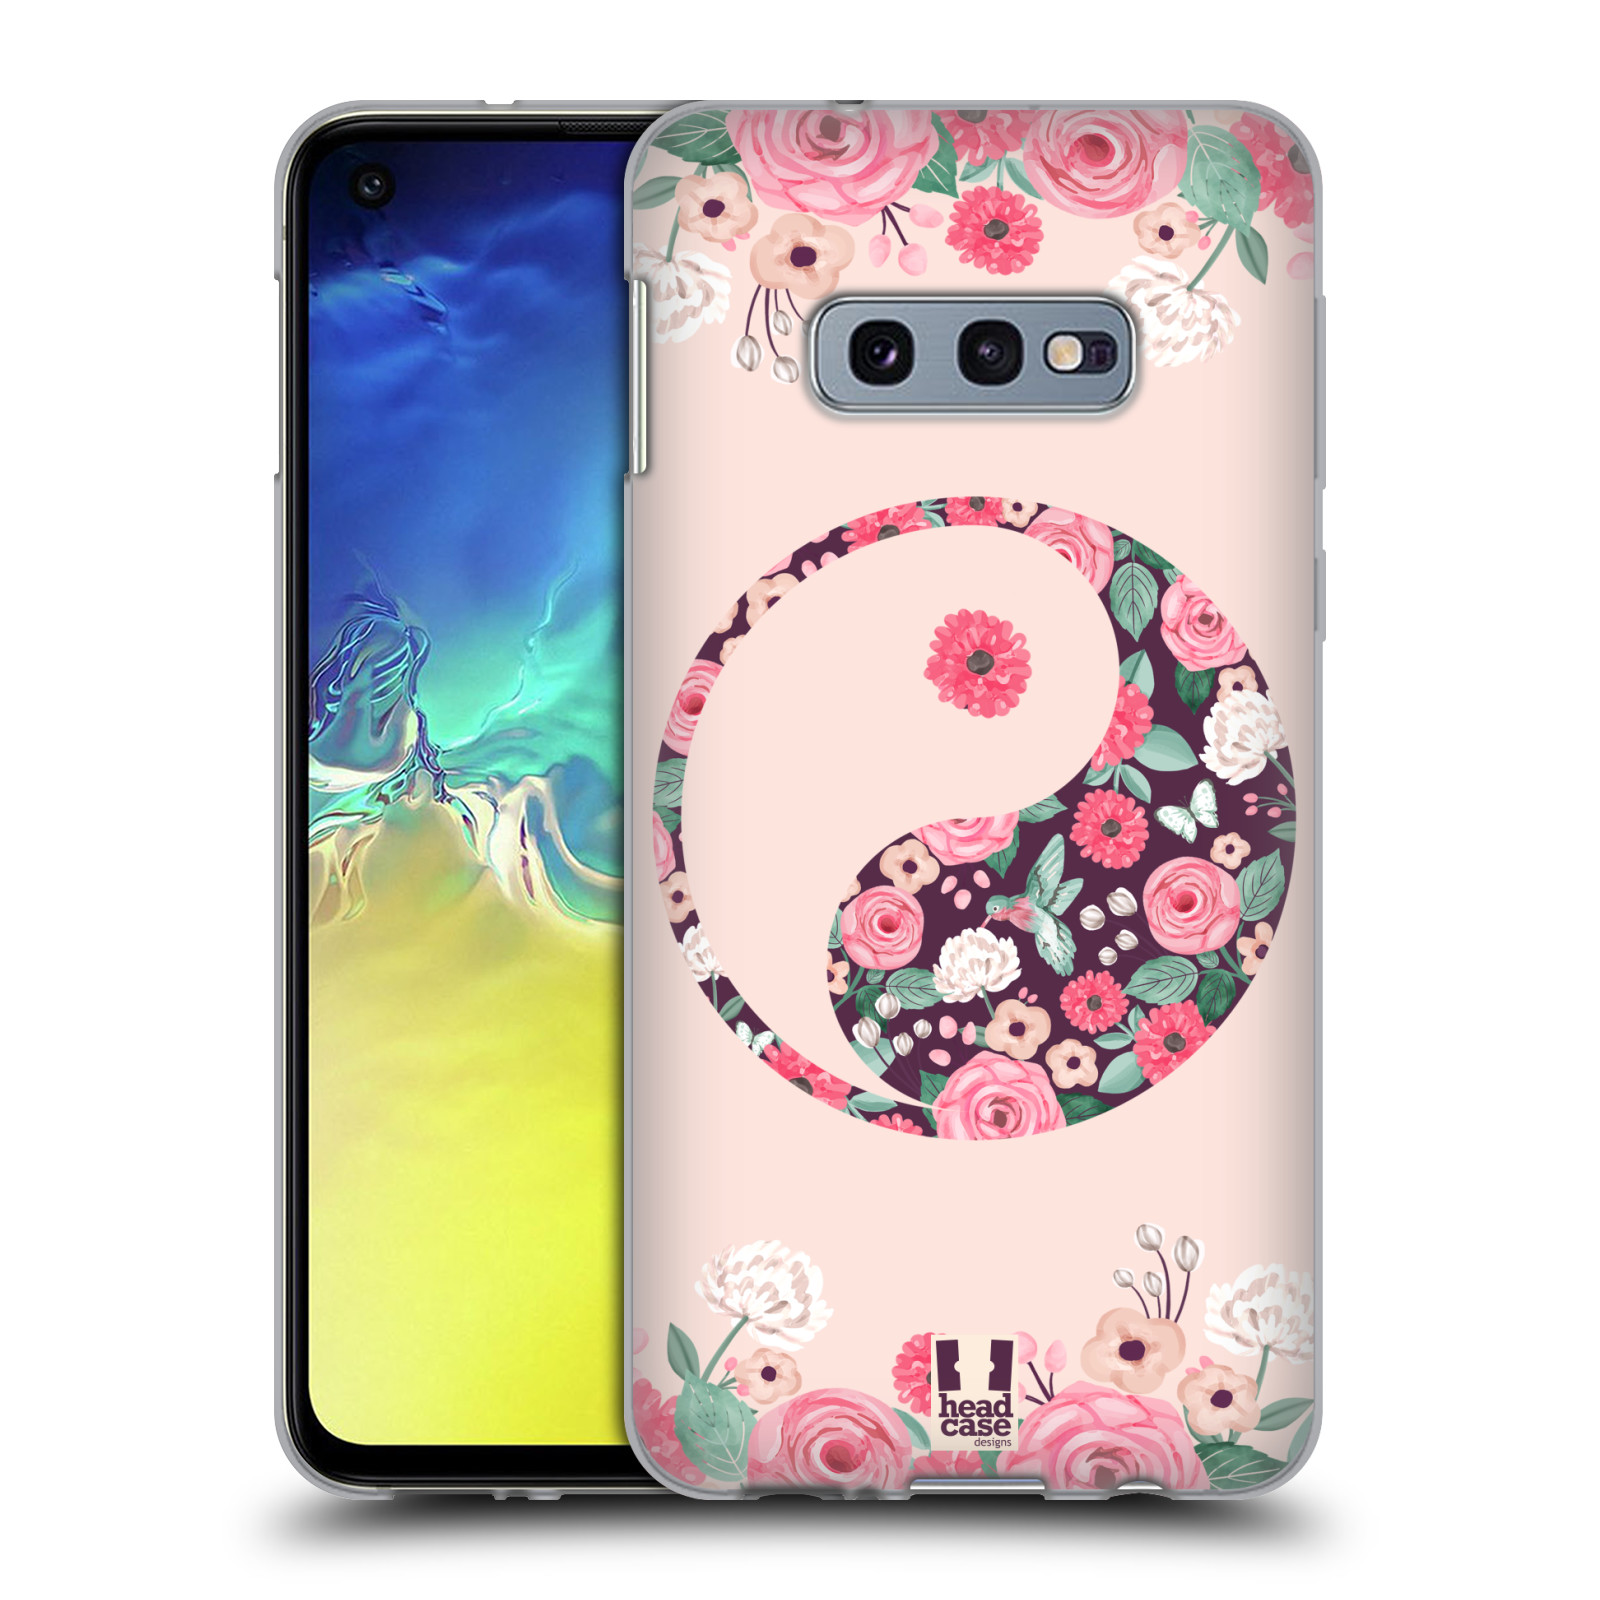 Silikonové pouzdro na mobil Samsung Galaxy S10e - Head Case - Yin a Yang Floral (Silikonový kryt, obal, pouzdro na mobilní telefon Samsung Galaxy S10e SM-G970 s motivem Yin a Yang Floral)